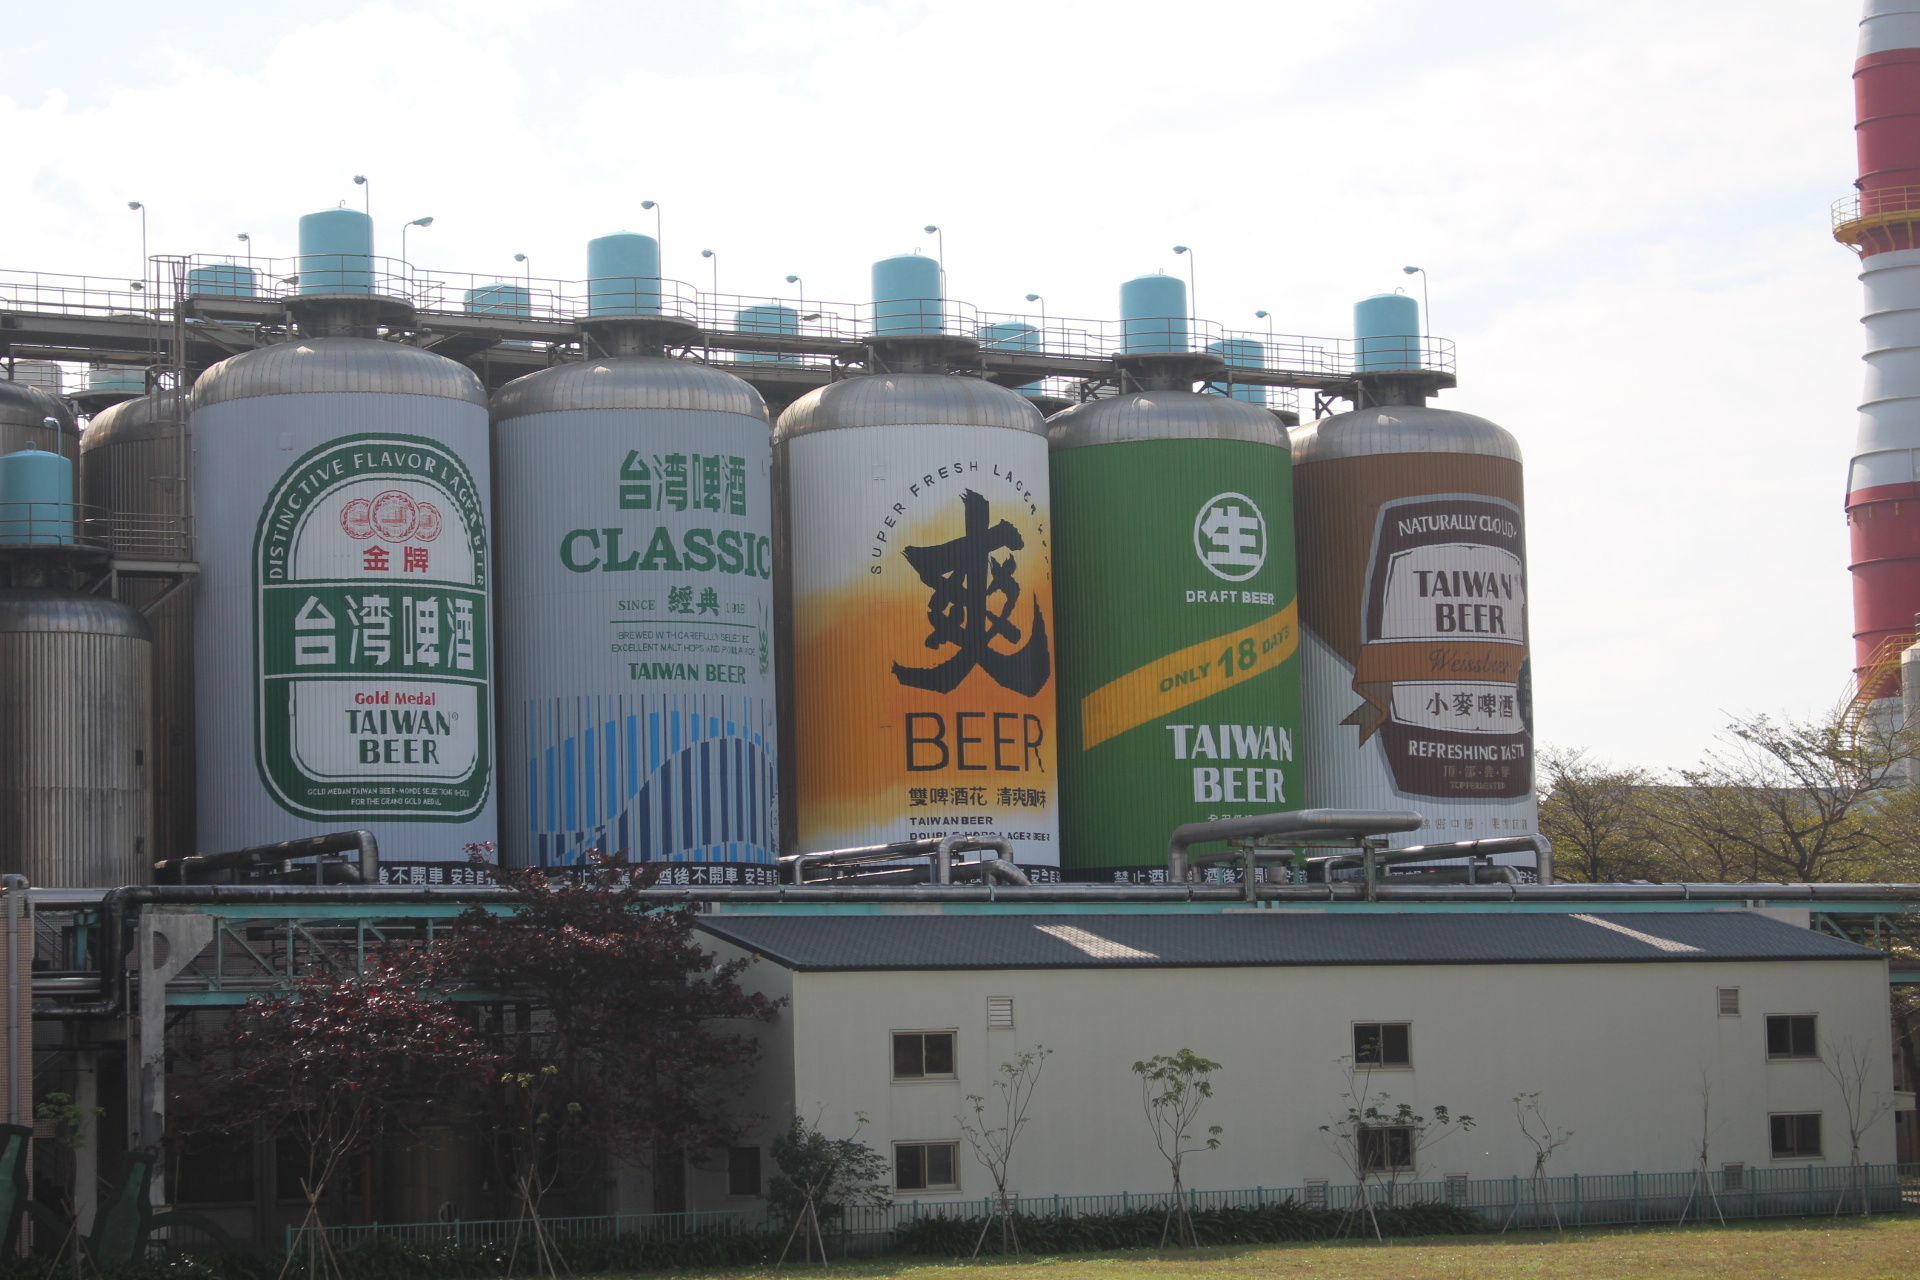 竹南啤酒廠 好拍的超大啤酒桶。免費啤酒隨你喝到飽